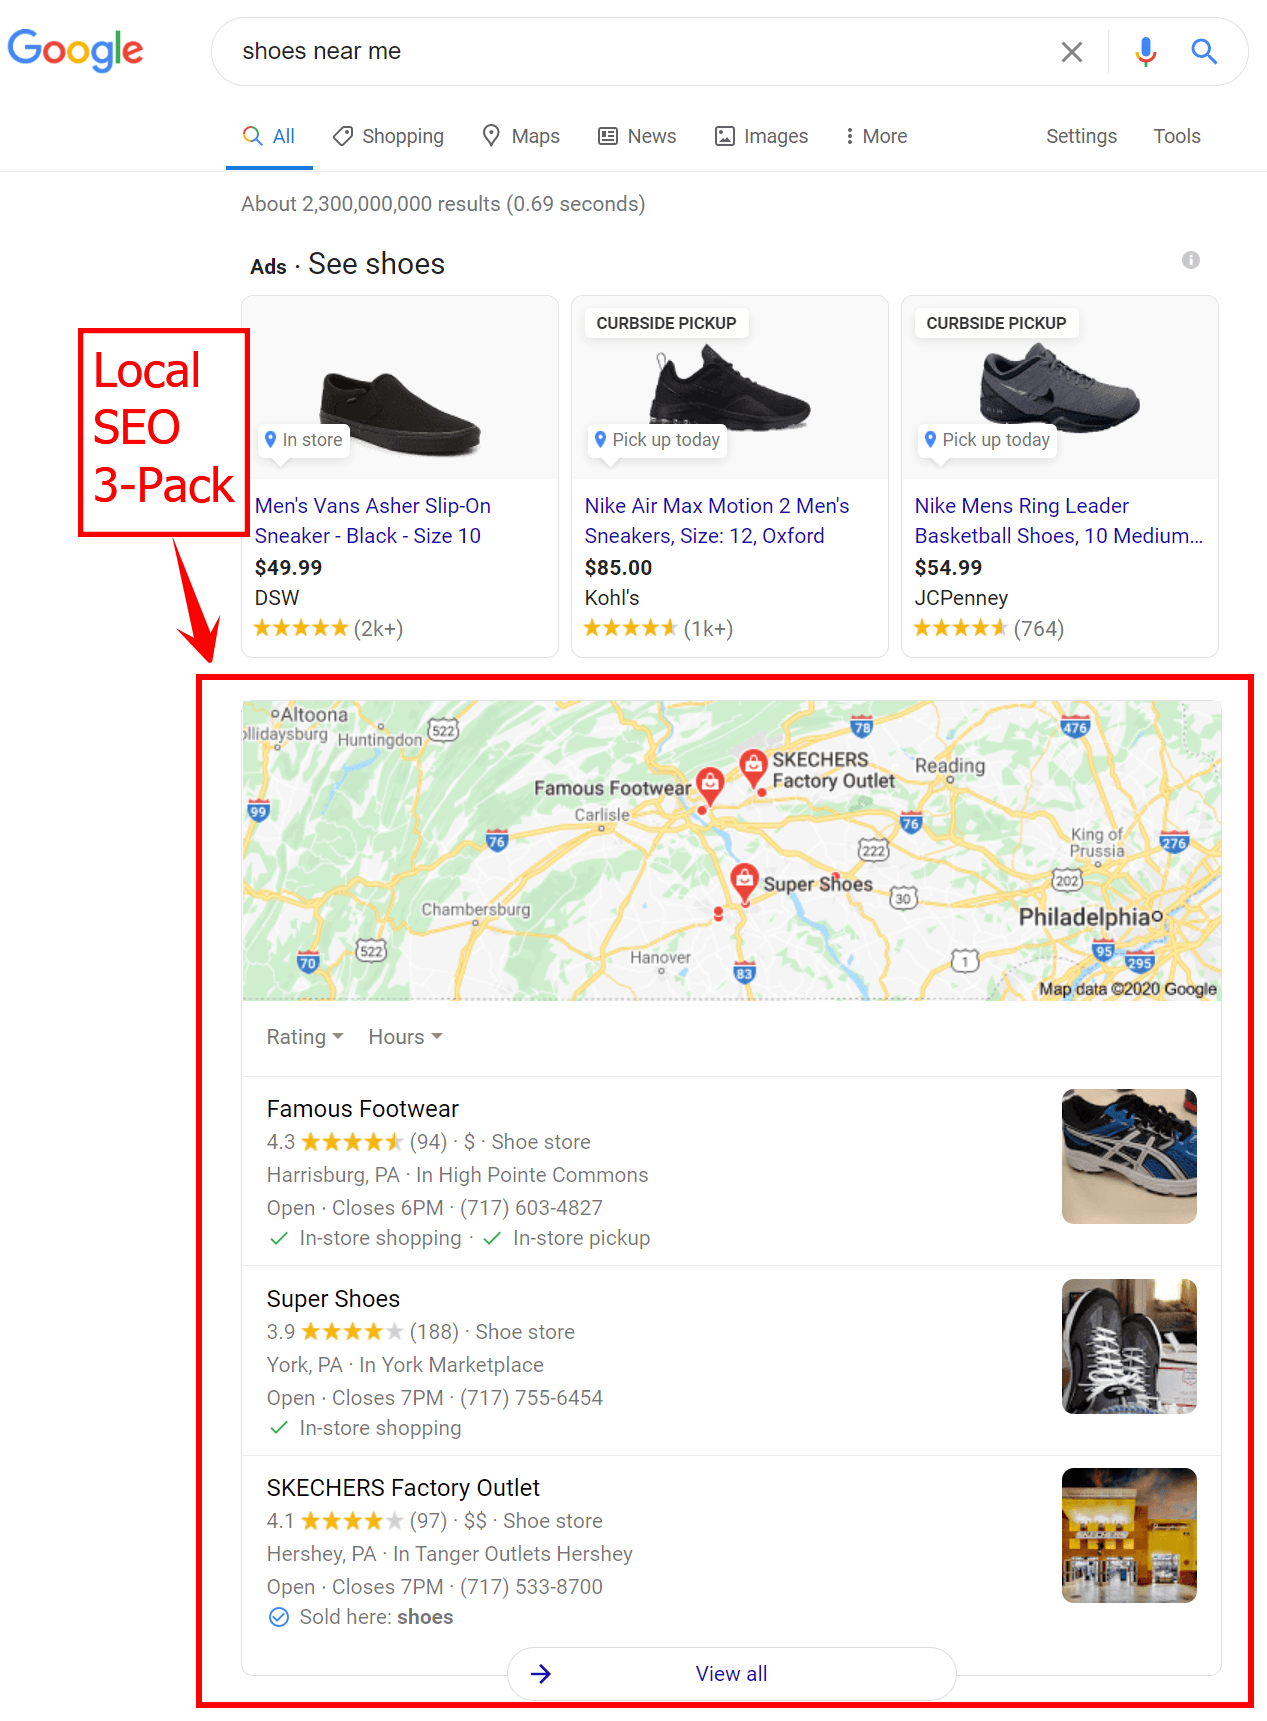 本地SEO 3-pack的谷歌搜索结果“鞋在我附近”